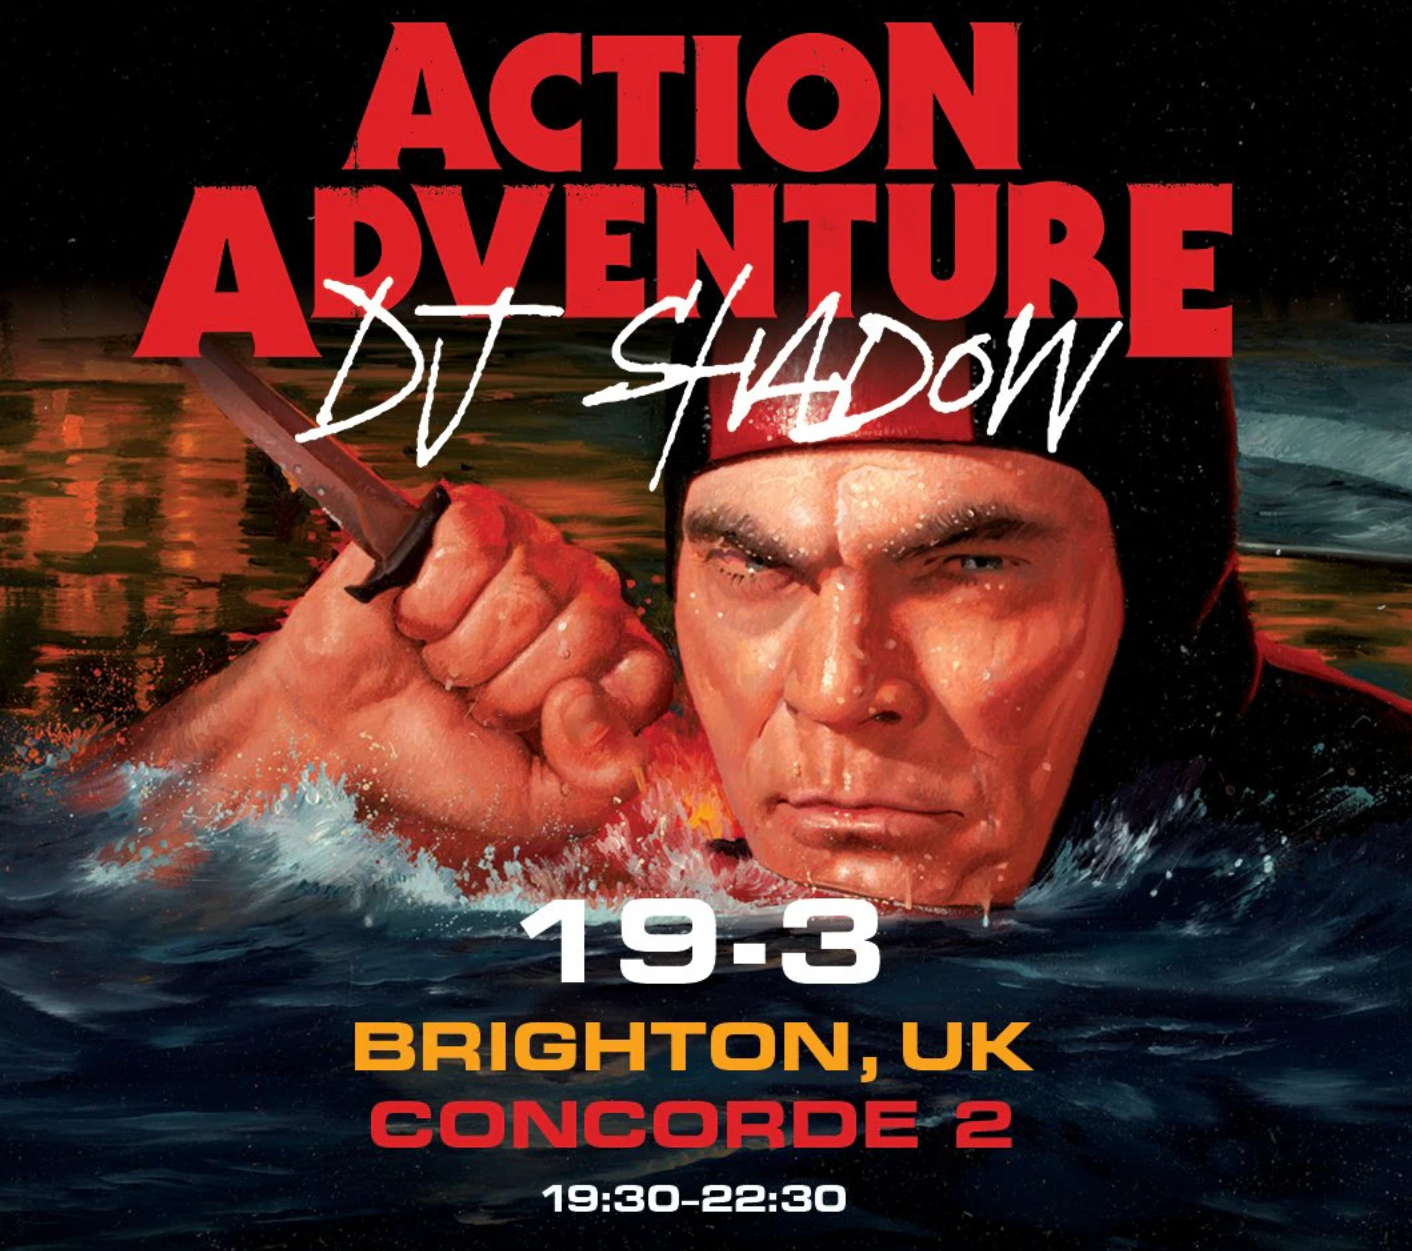 DJ Shadow Album Launch "Action Adventure" - Página frontal